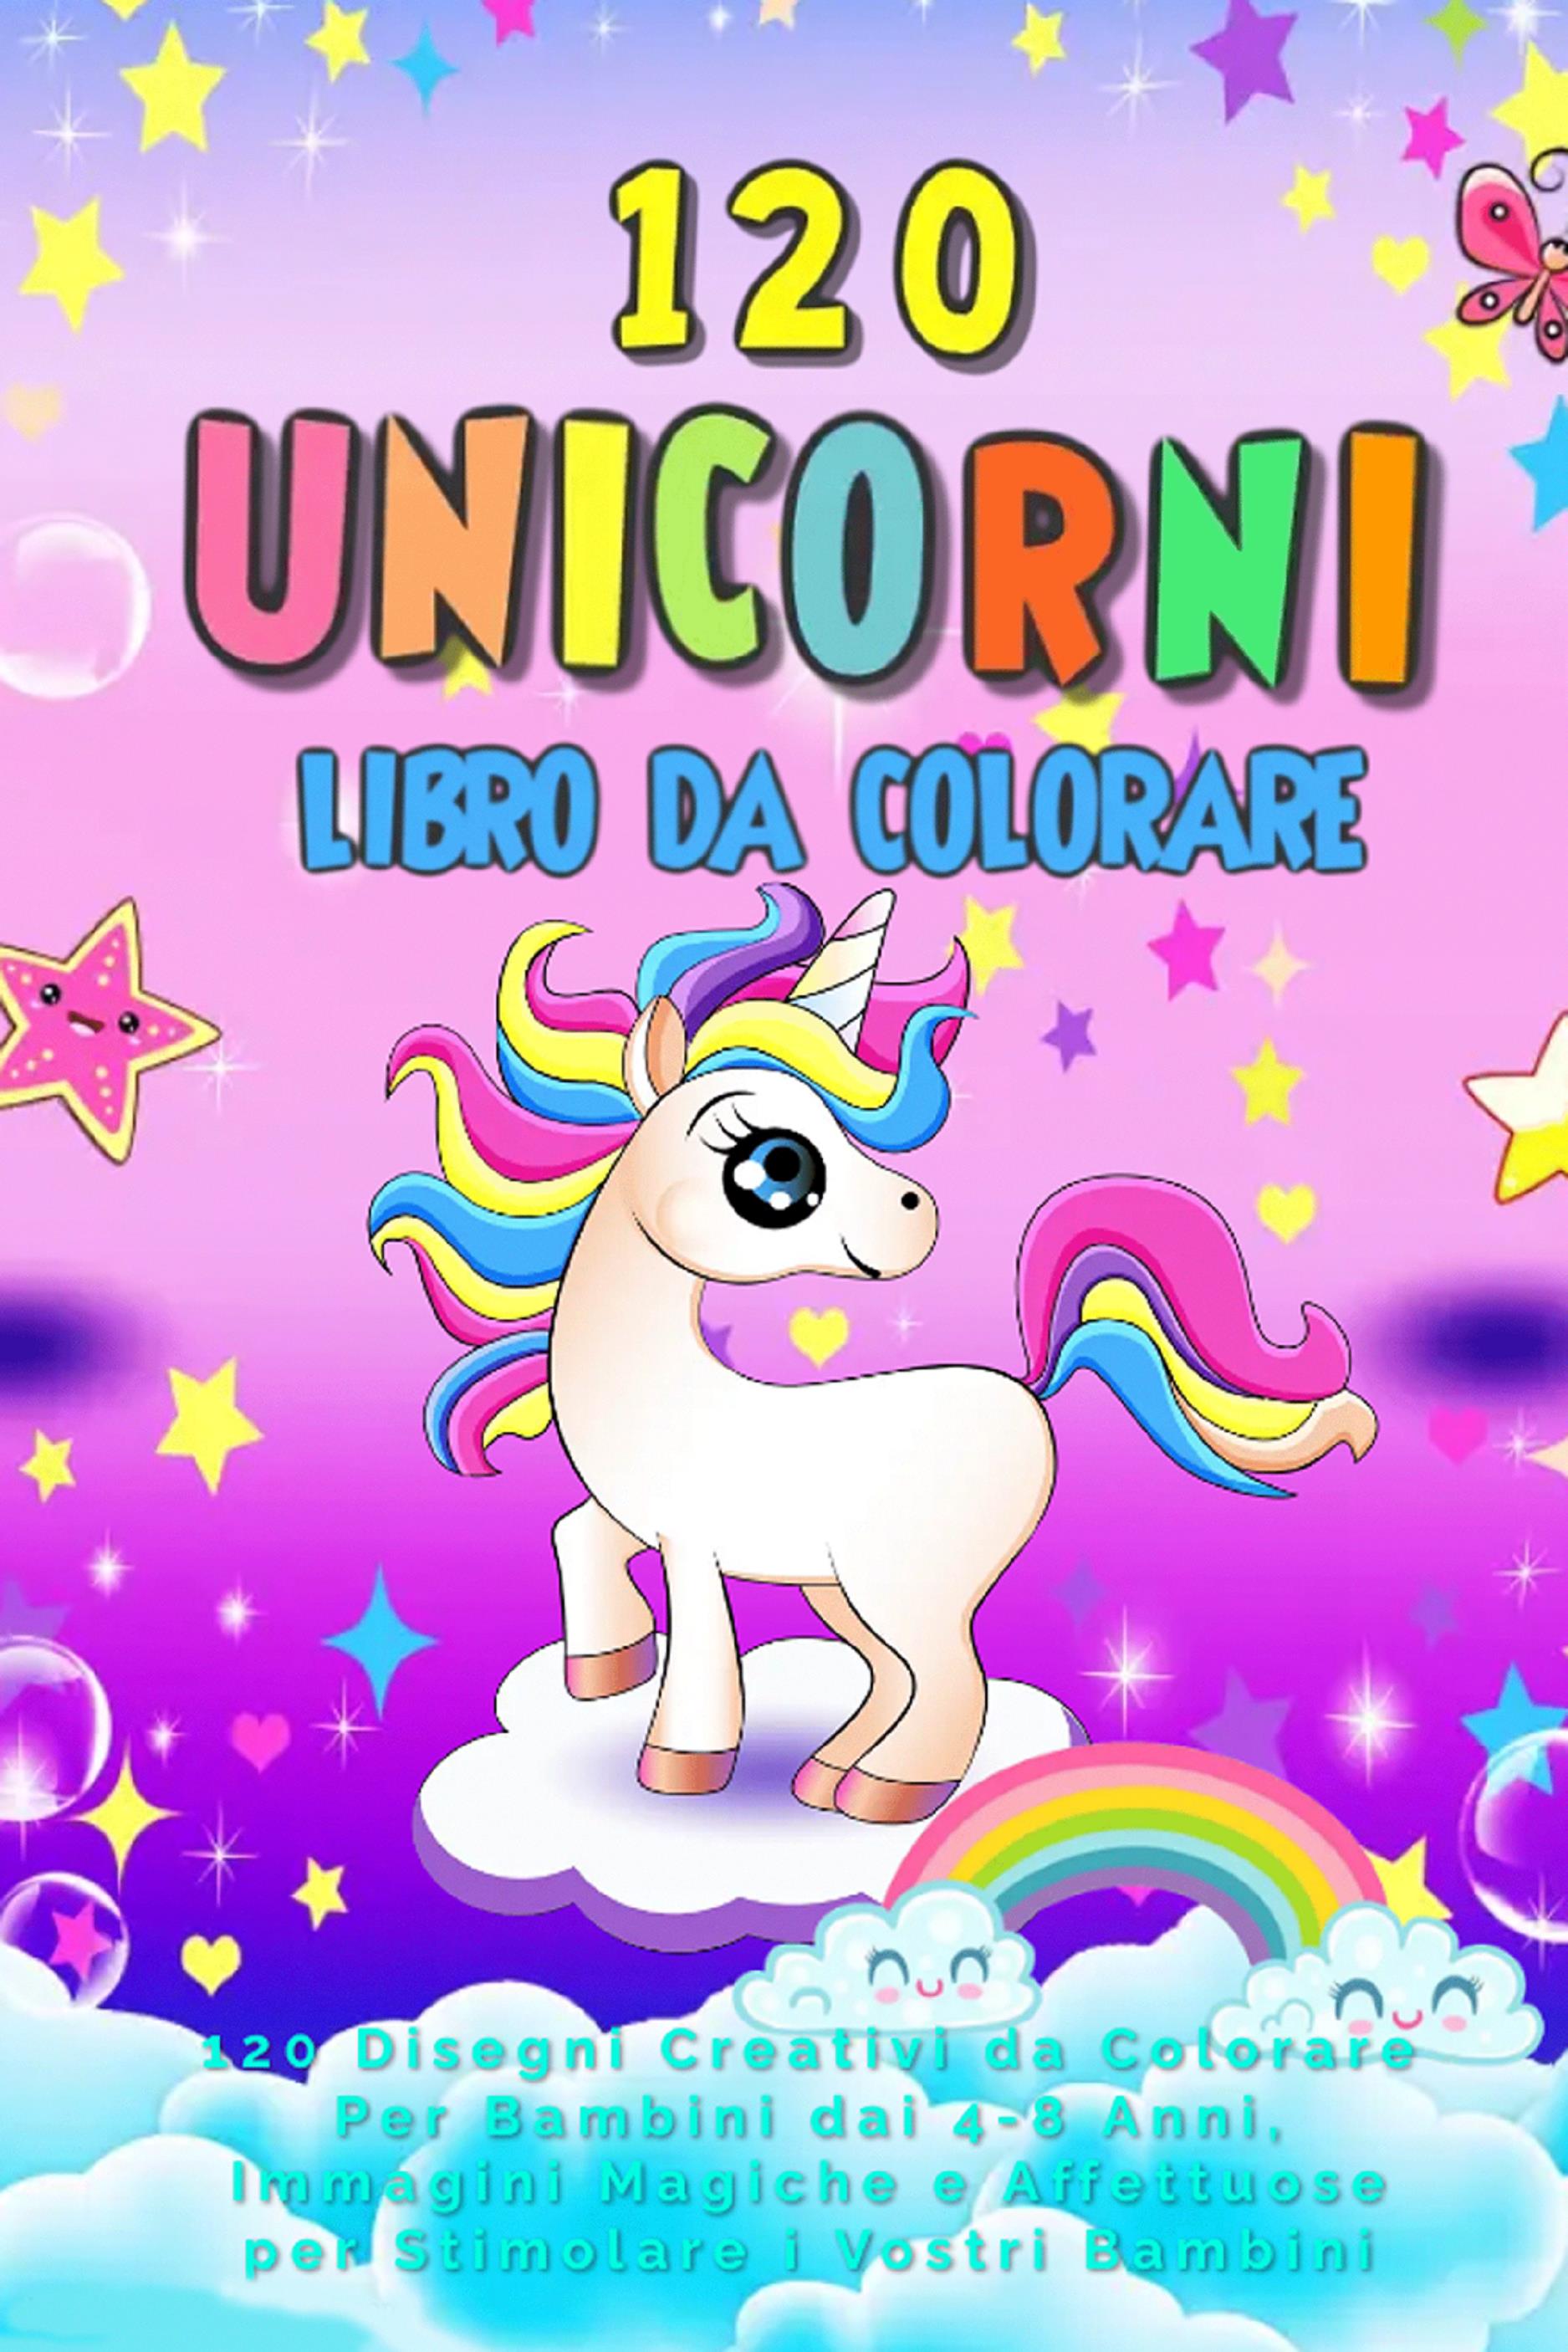 Unicorni Libro da Colorare: 120 Disegni Creativi da Colorare Per Bambini  dai 4-8 Anni, Immagini Magiche e Affettuose per Stimolare i Vostri Bambini  di Unicorn Art